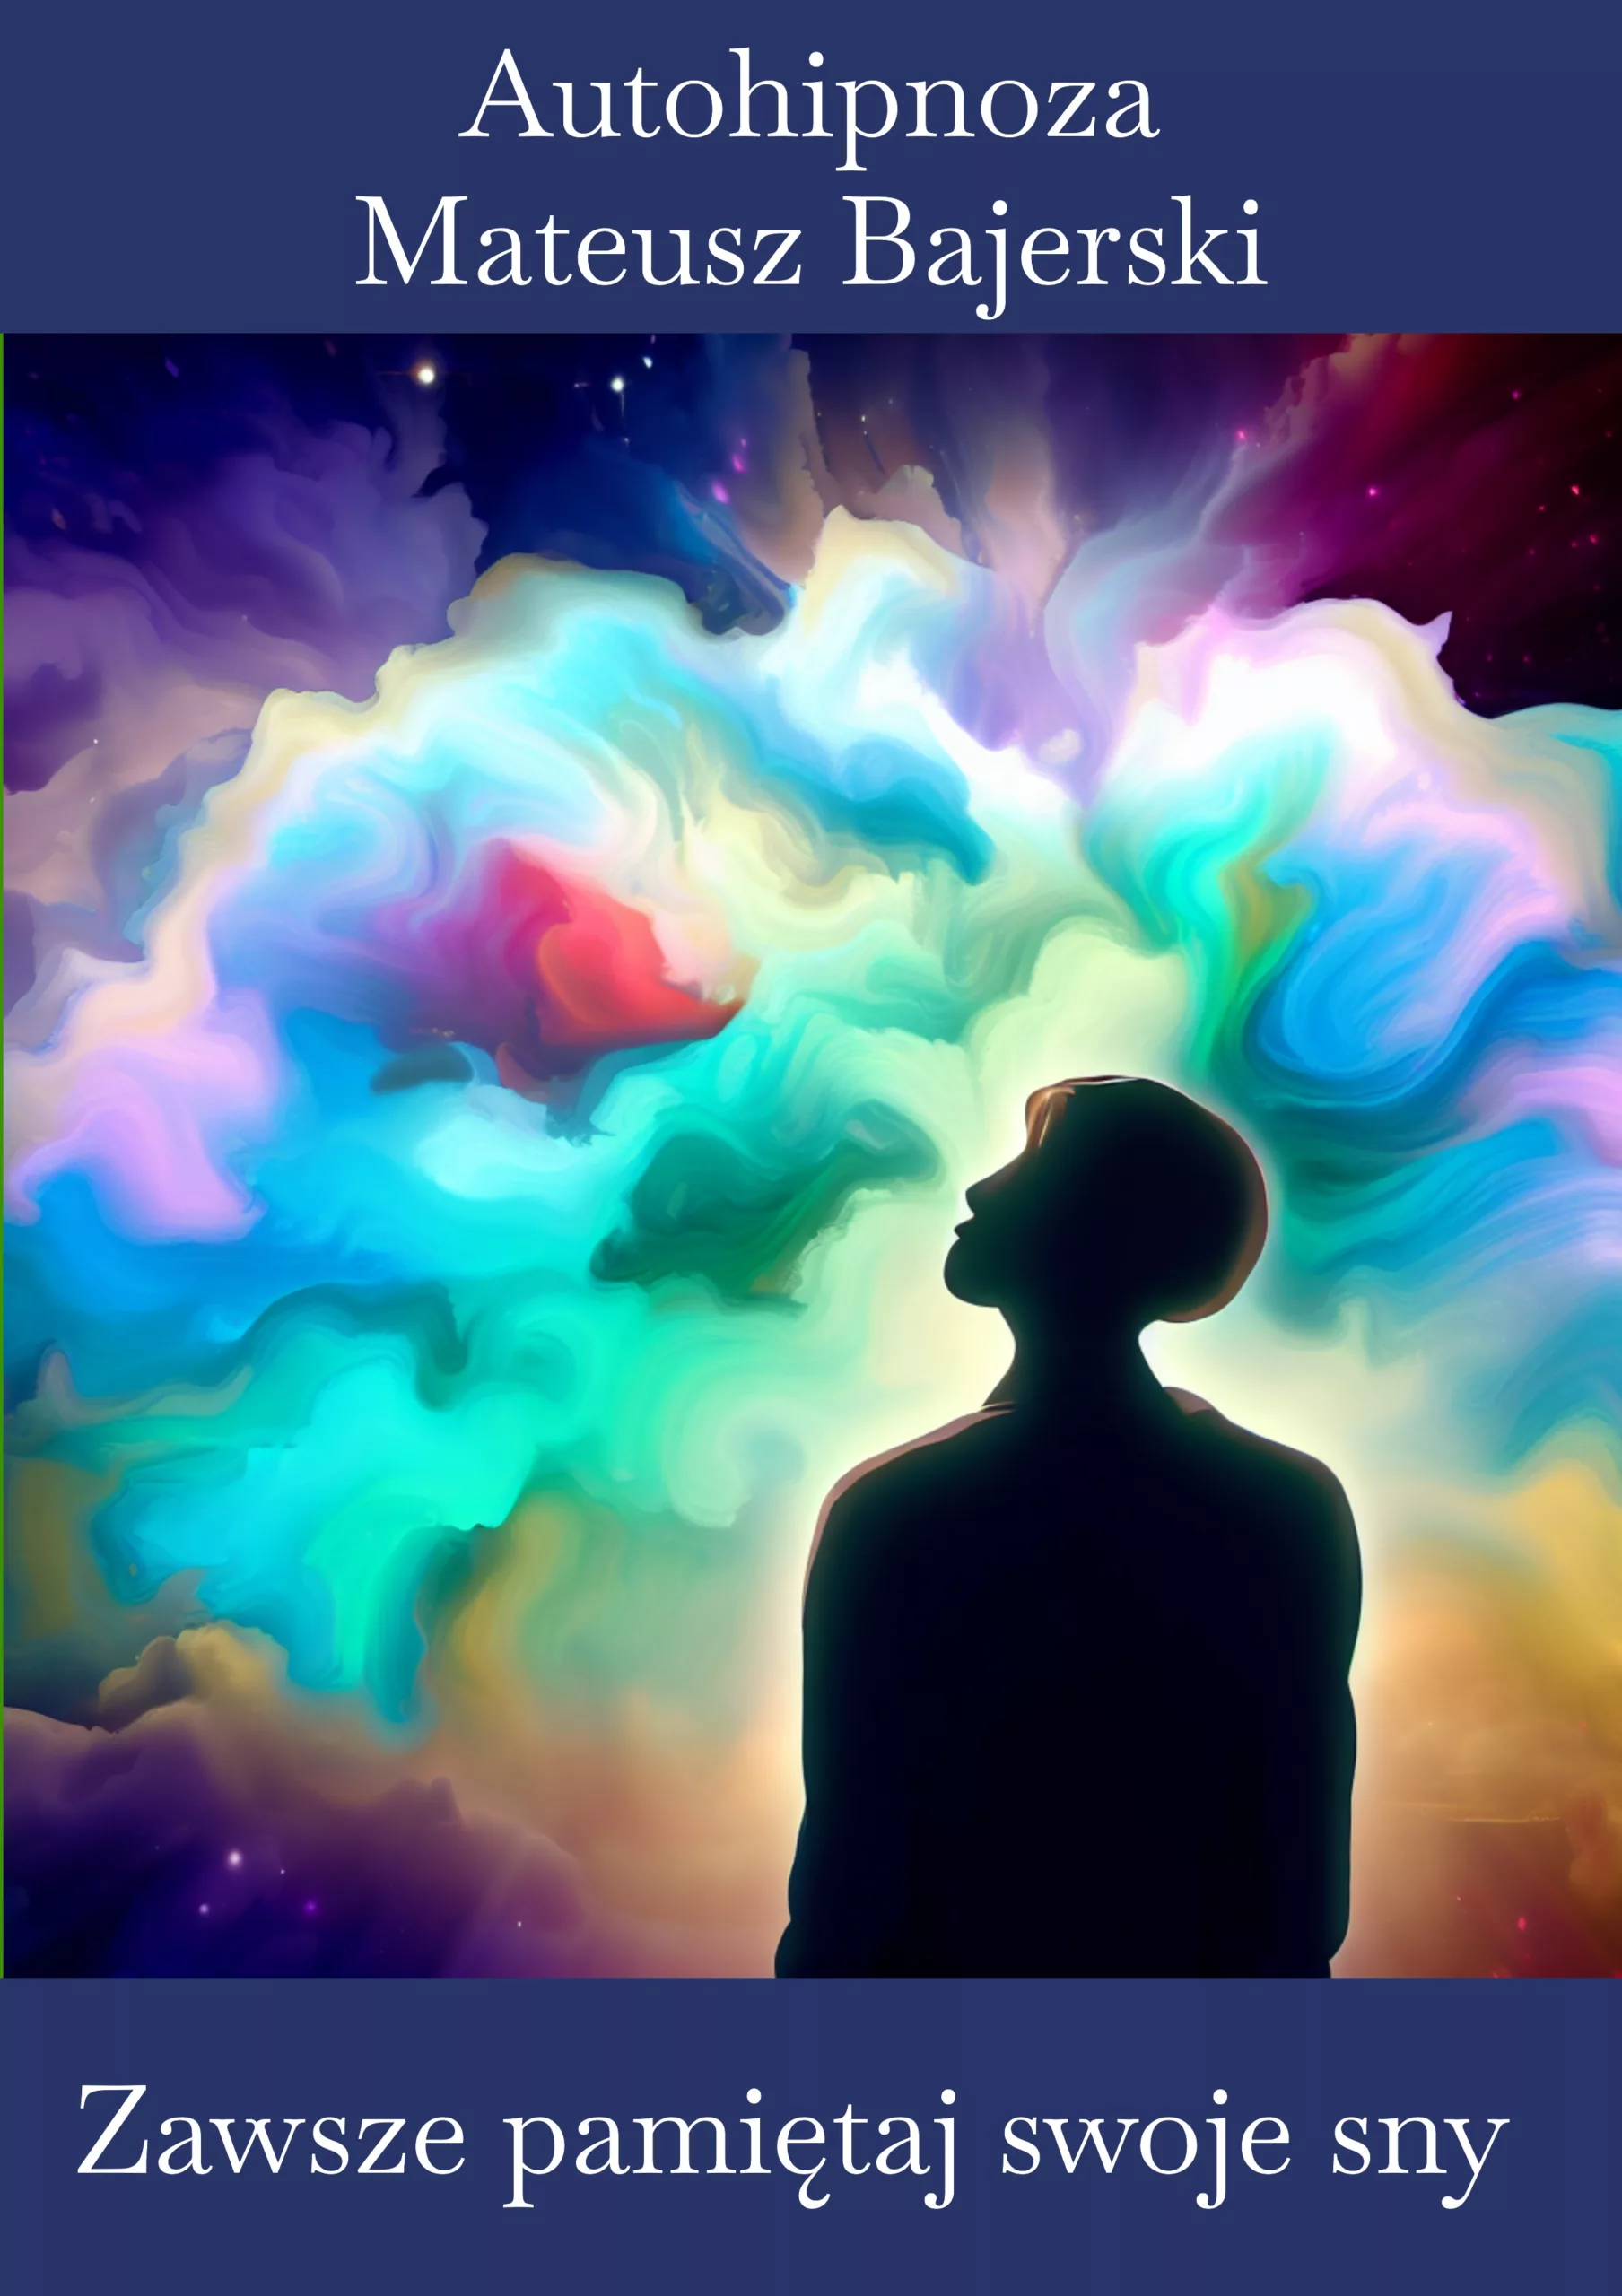 Obraz człowieka śniącego kolorowe, abstrakcyjne obrazy, które są wypuszczane z jego mózgu.